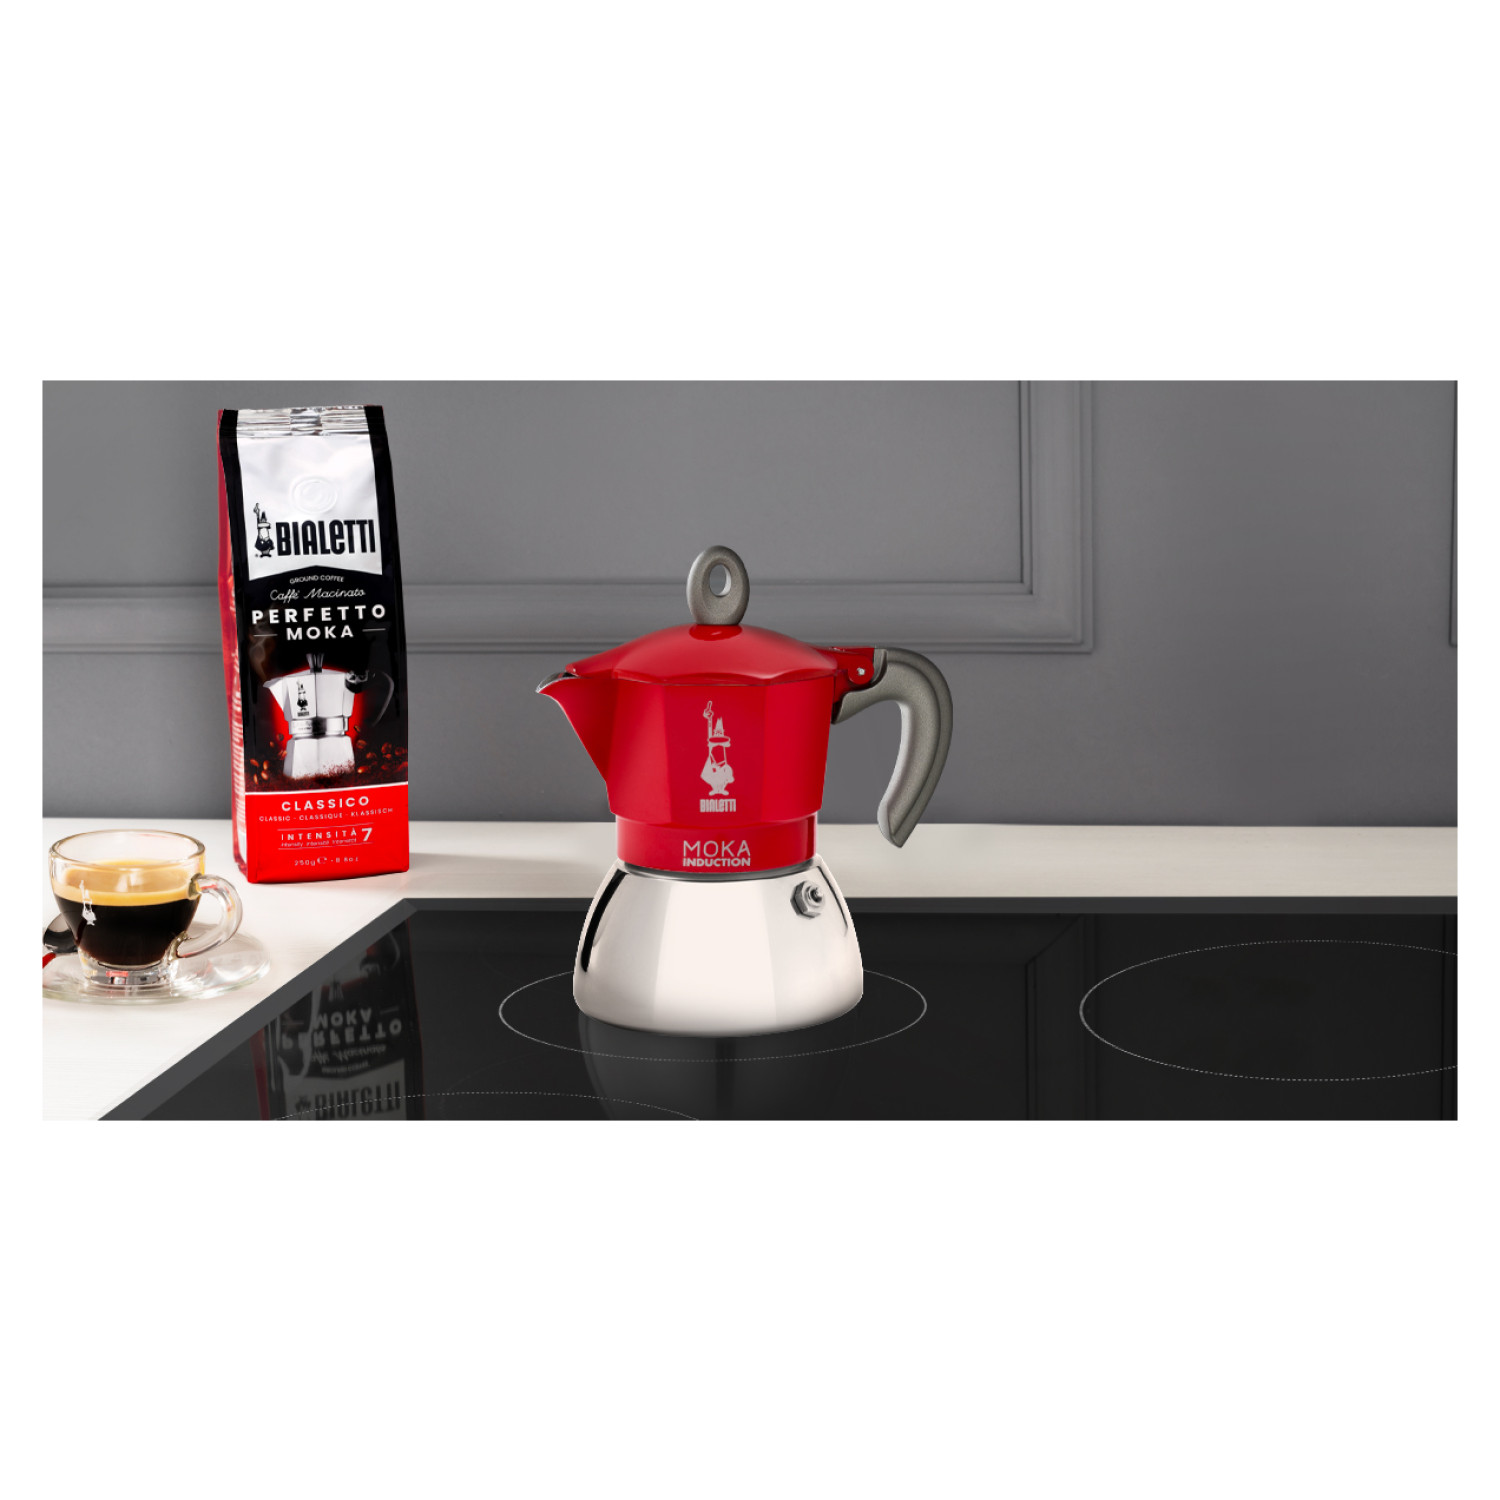 BIALETTI New Moka für RED Induction Espressokocher Tassen Rot/Silber 2